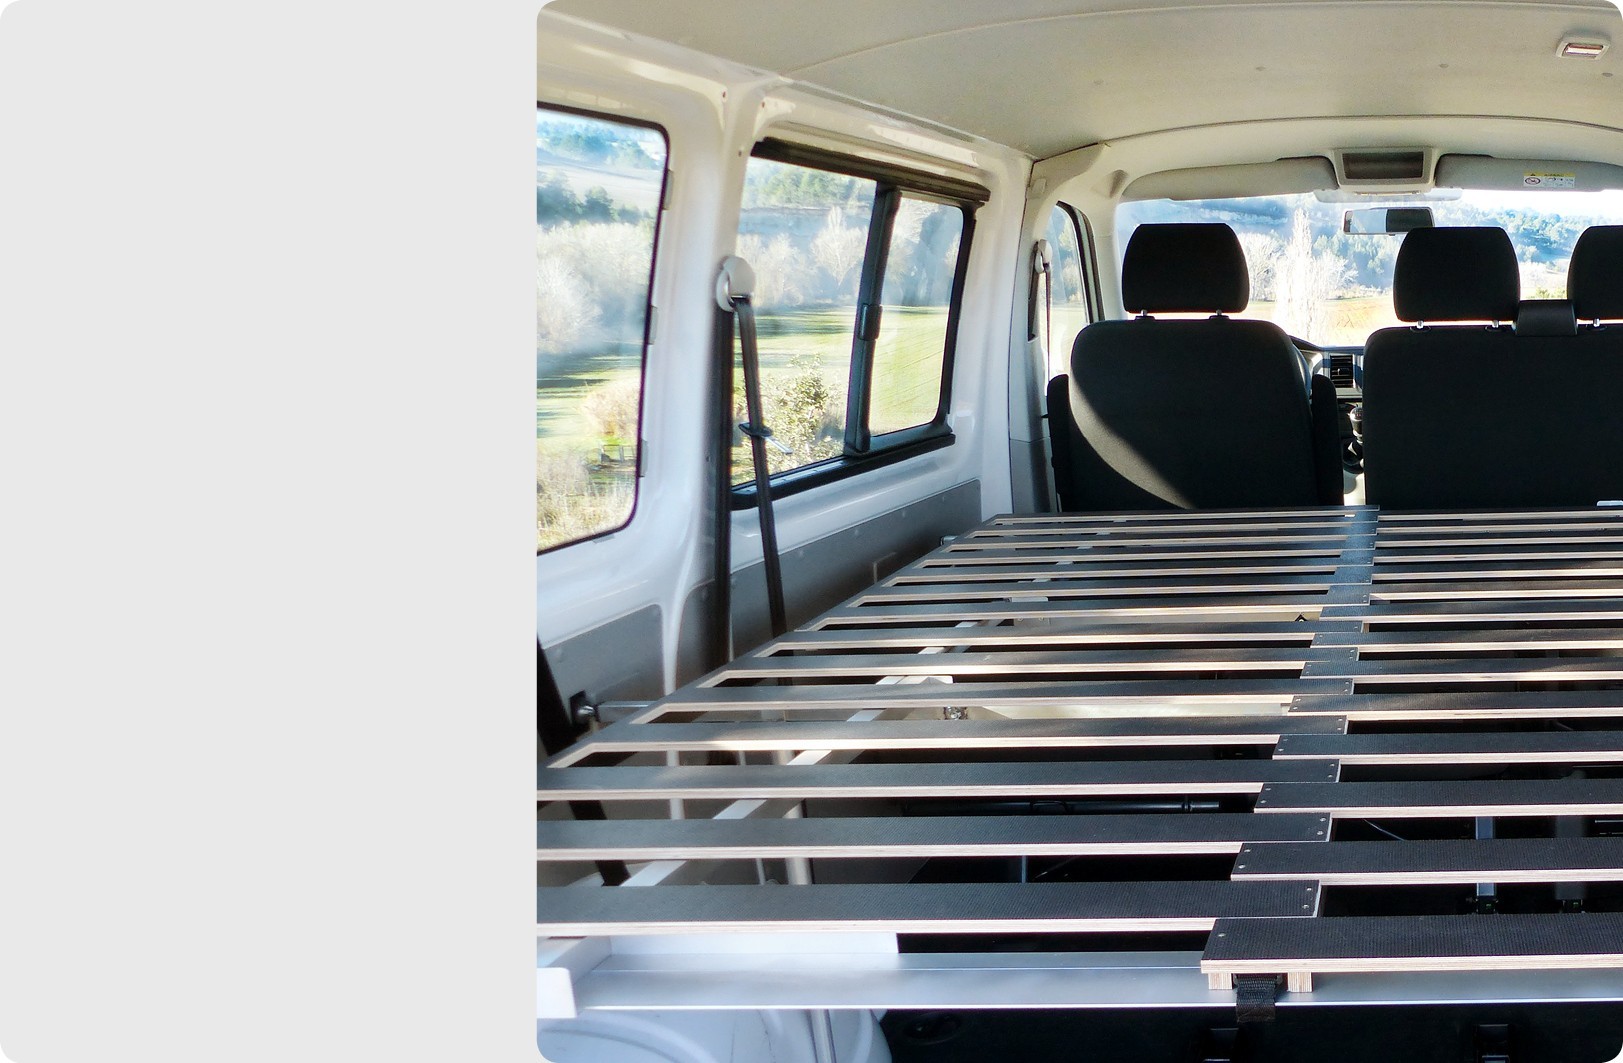 Likecamper - turn your van, minivan or SUV into a campervan - LikeCamper